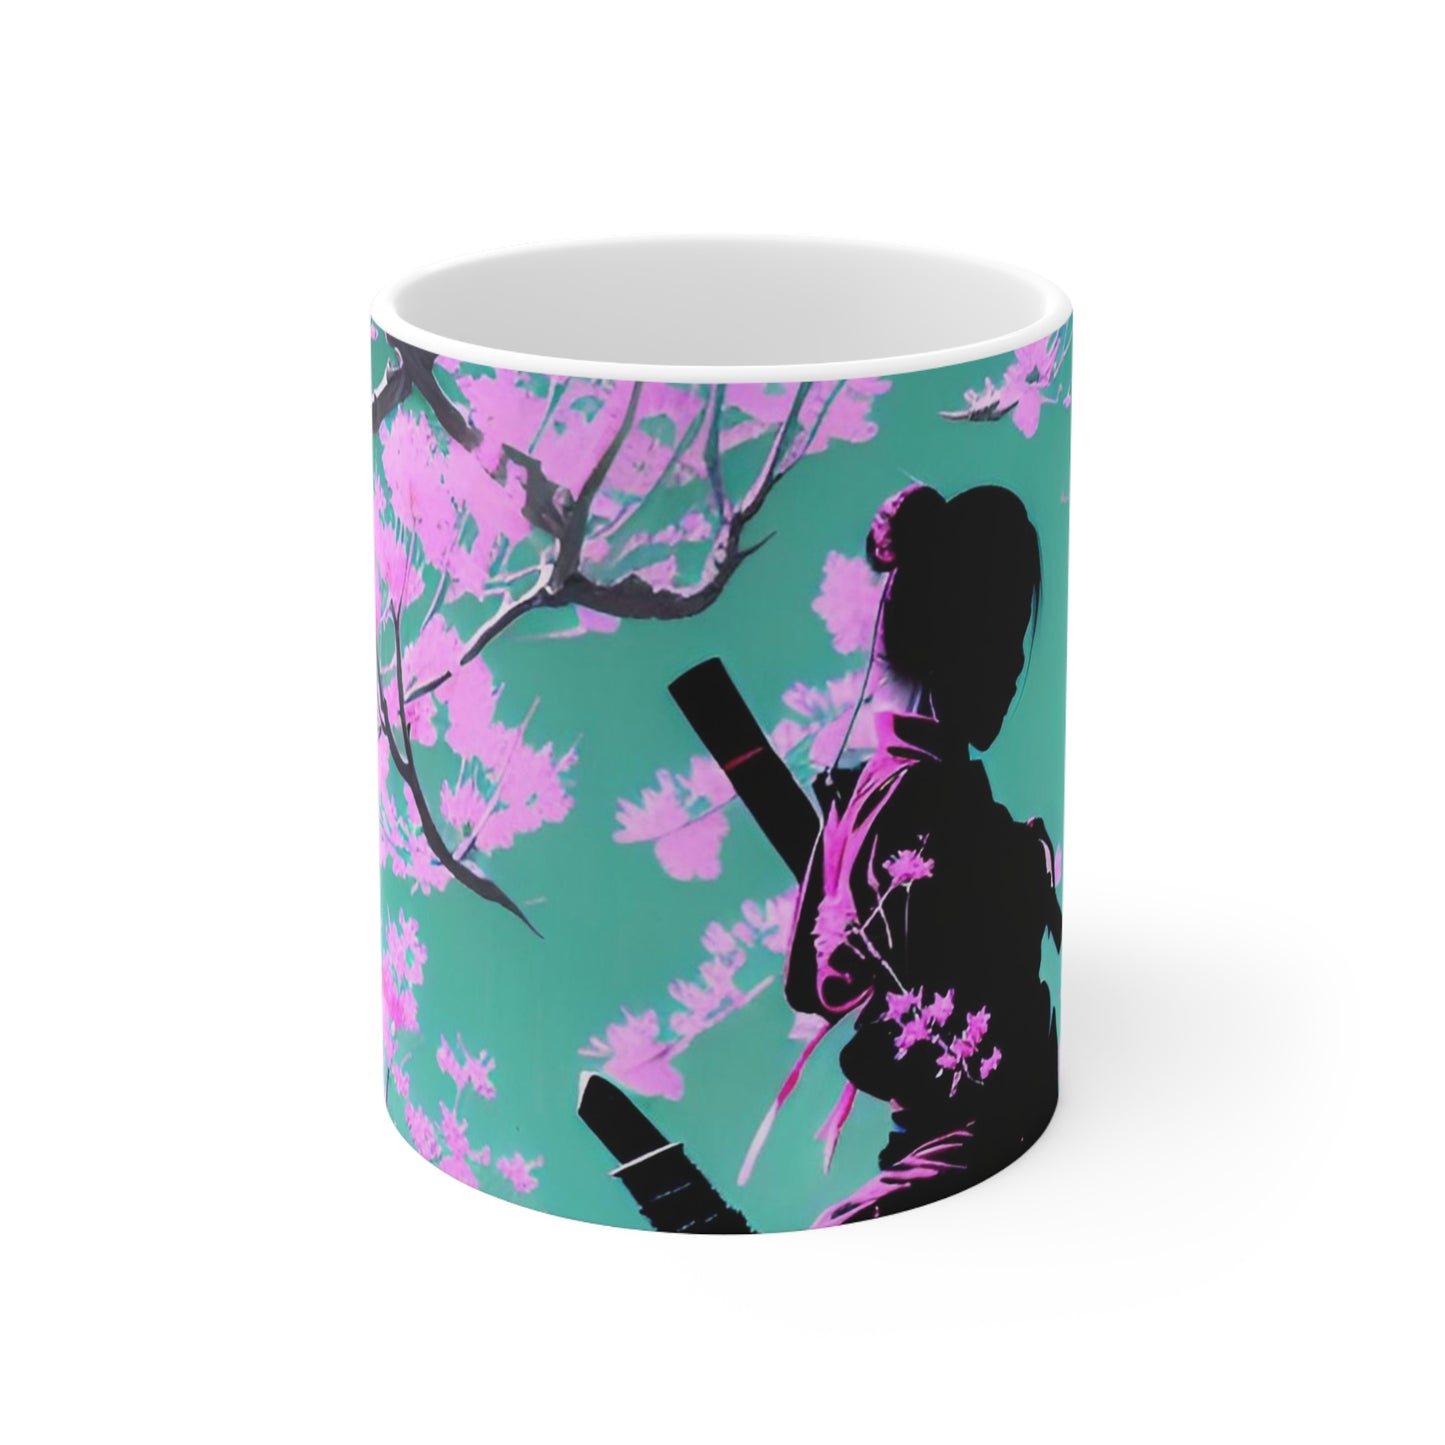 Cherry Blossum 2 Ceramic Mug 11oz